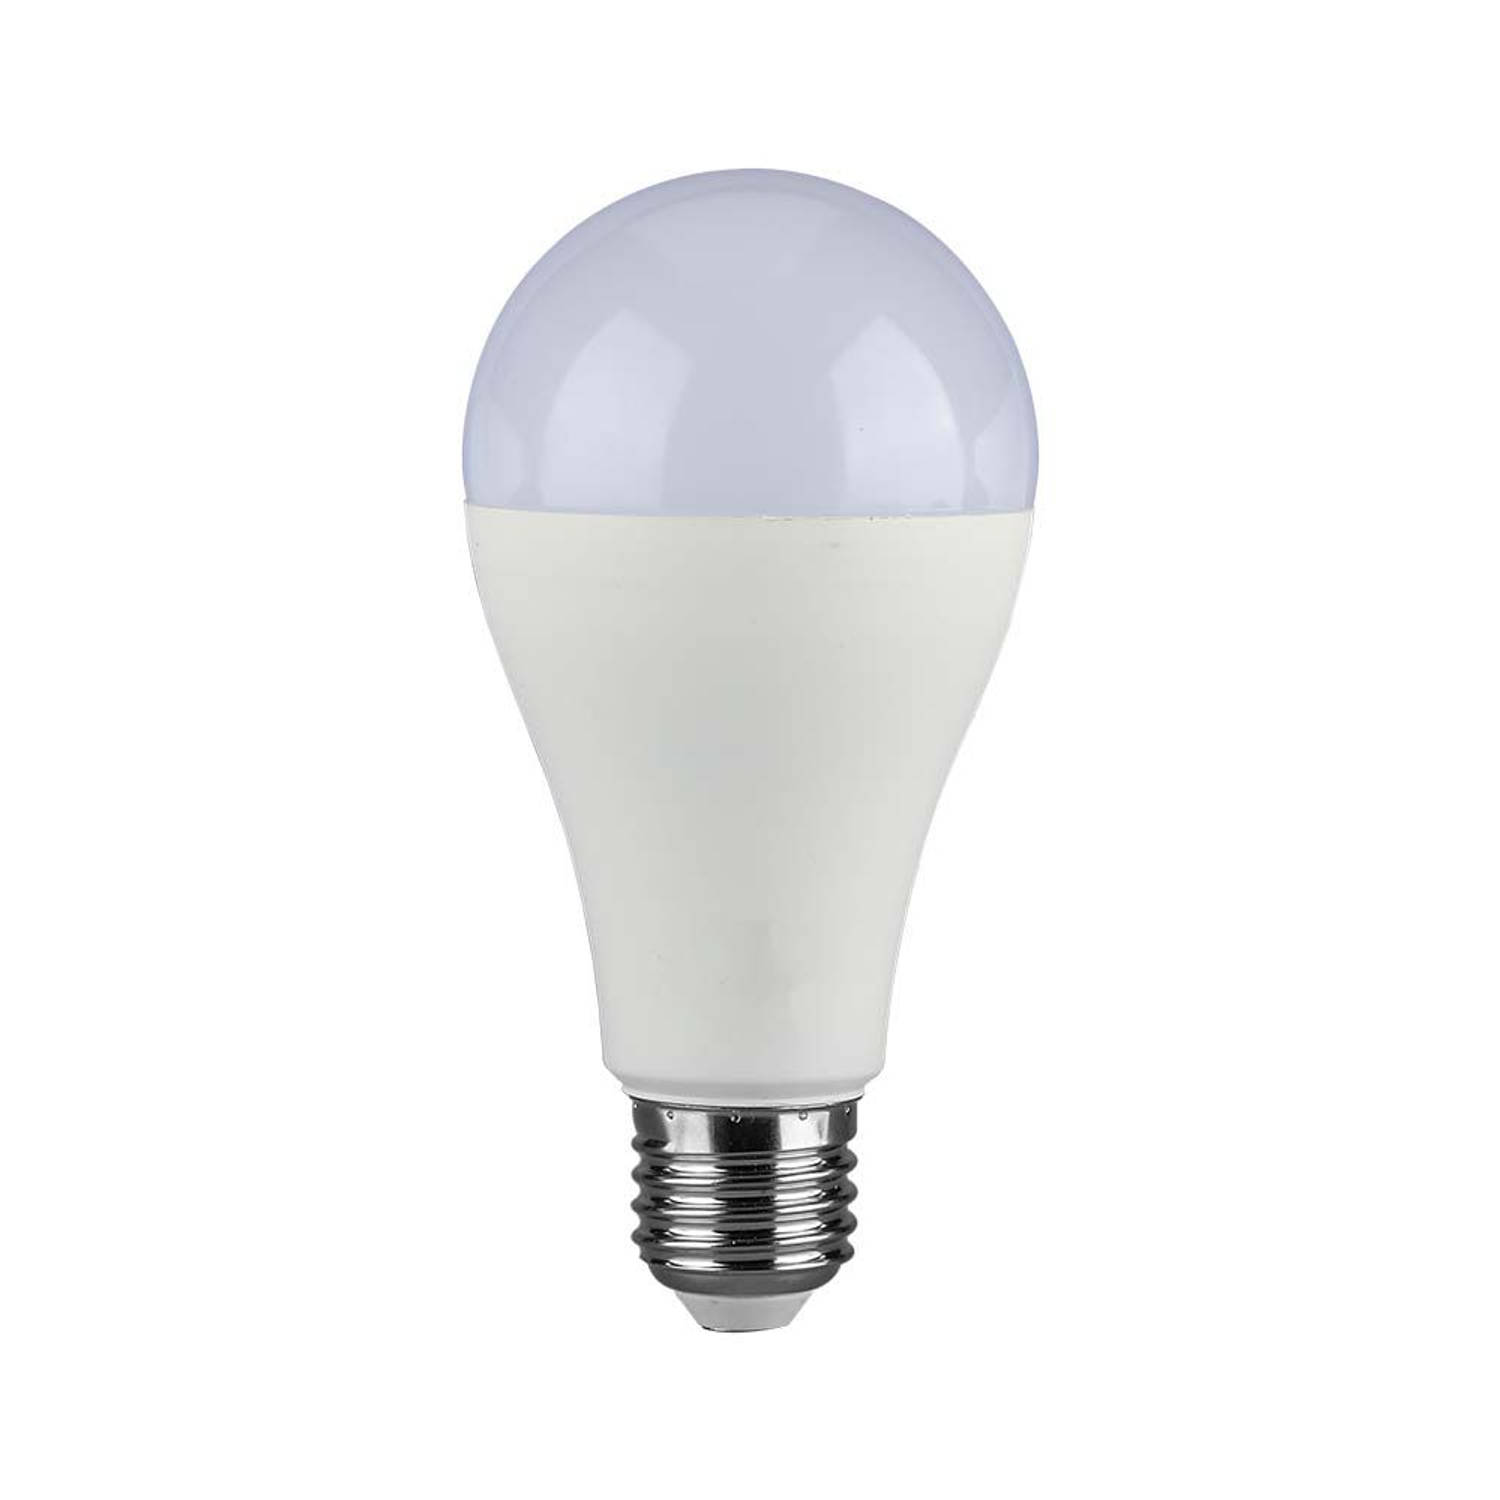 V-TAC VT-2015-N LED Lampen - GLS E27 - IP20 - 15 Watt - 1521 Lumen - 6500K